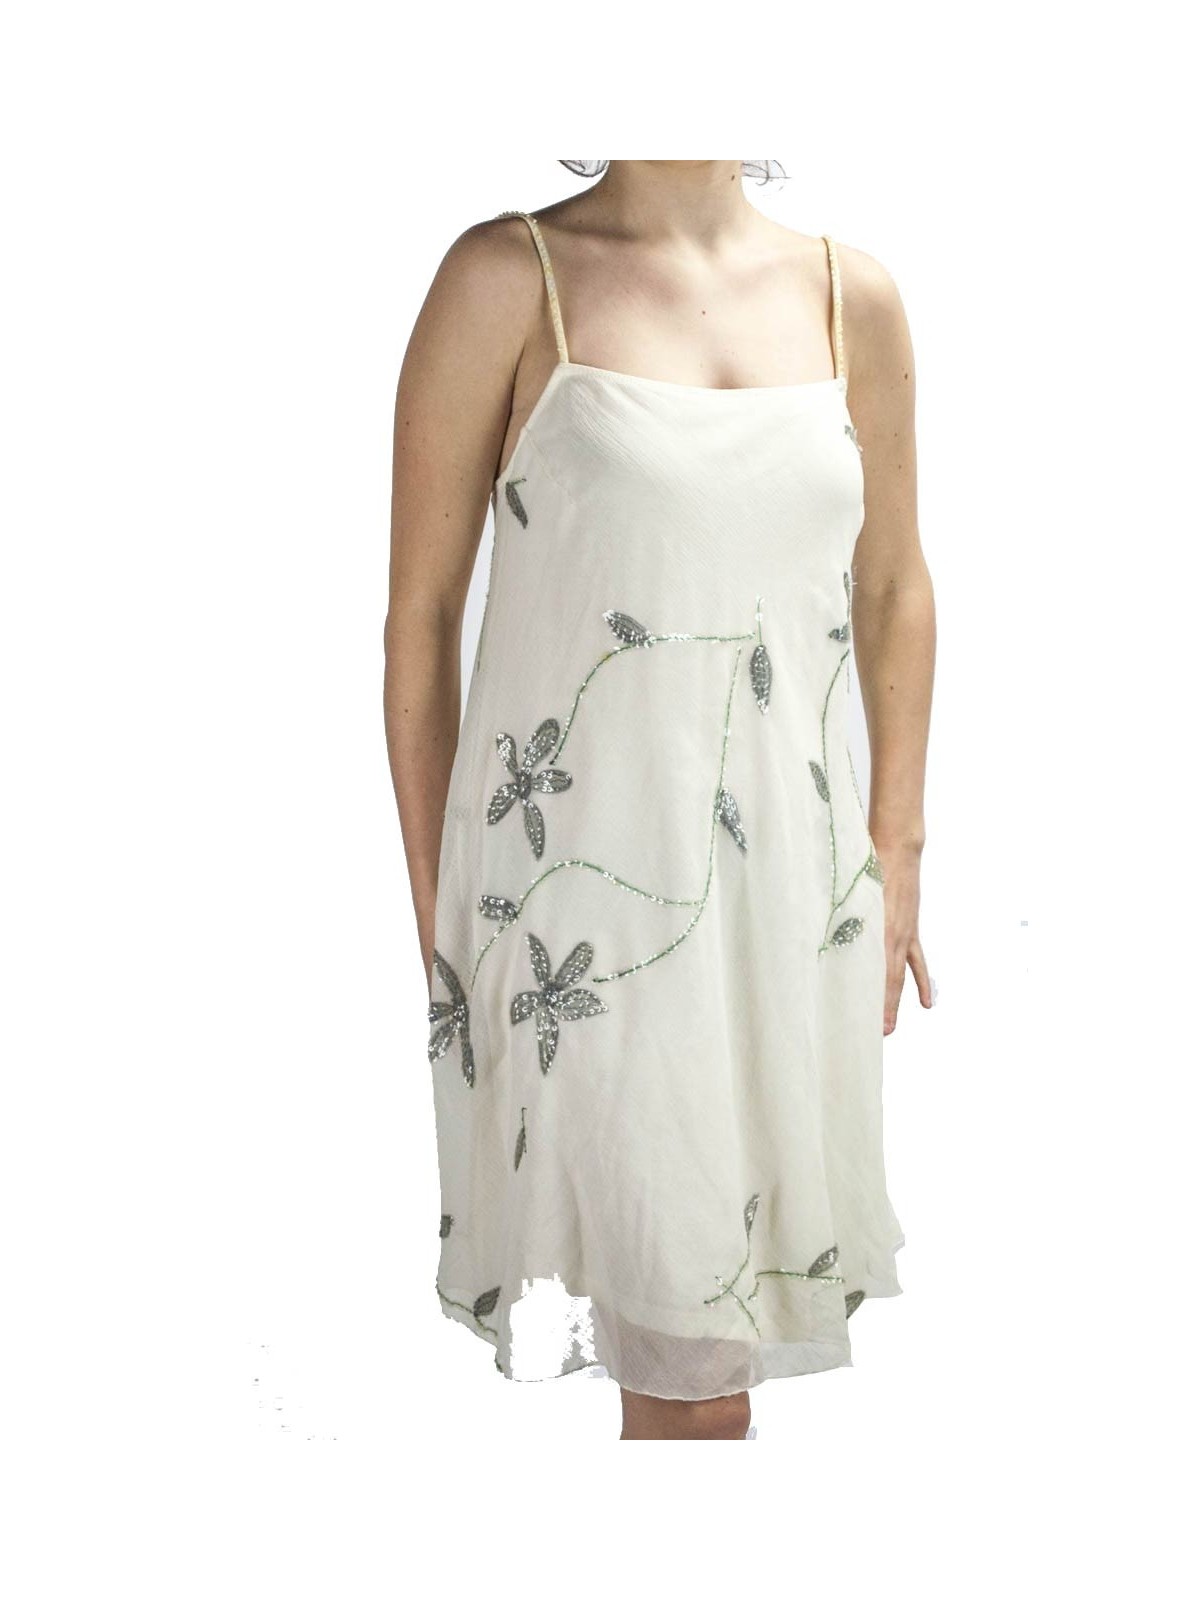 Elegante Mini Vestido Mujer Trapecio M Marfil - Bordado Floral y Lentejuelas